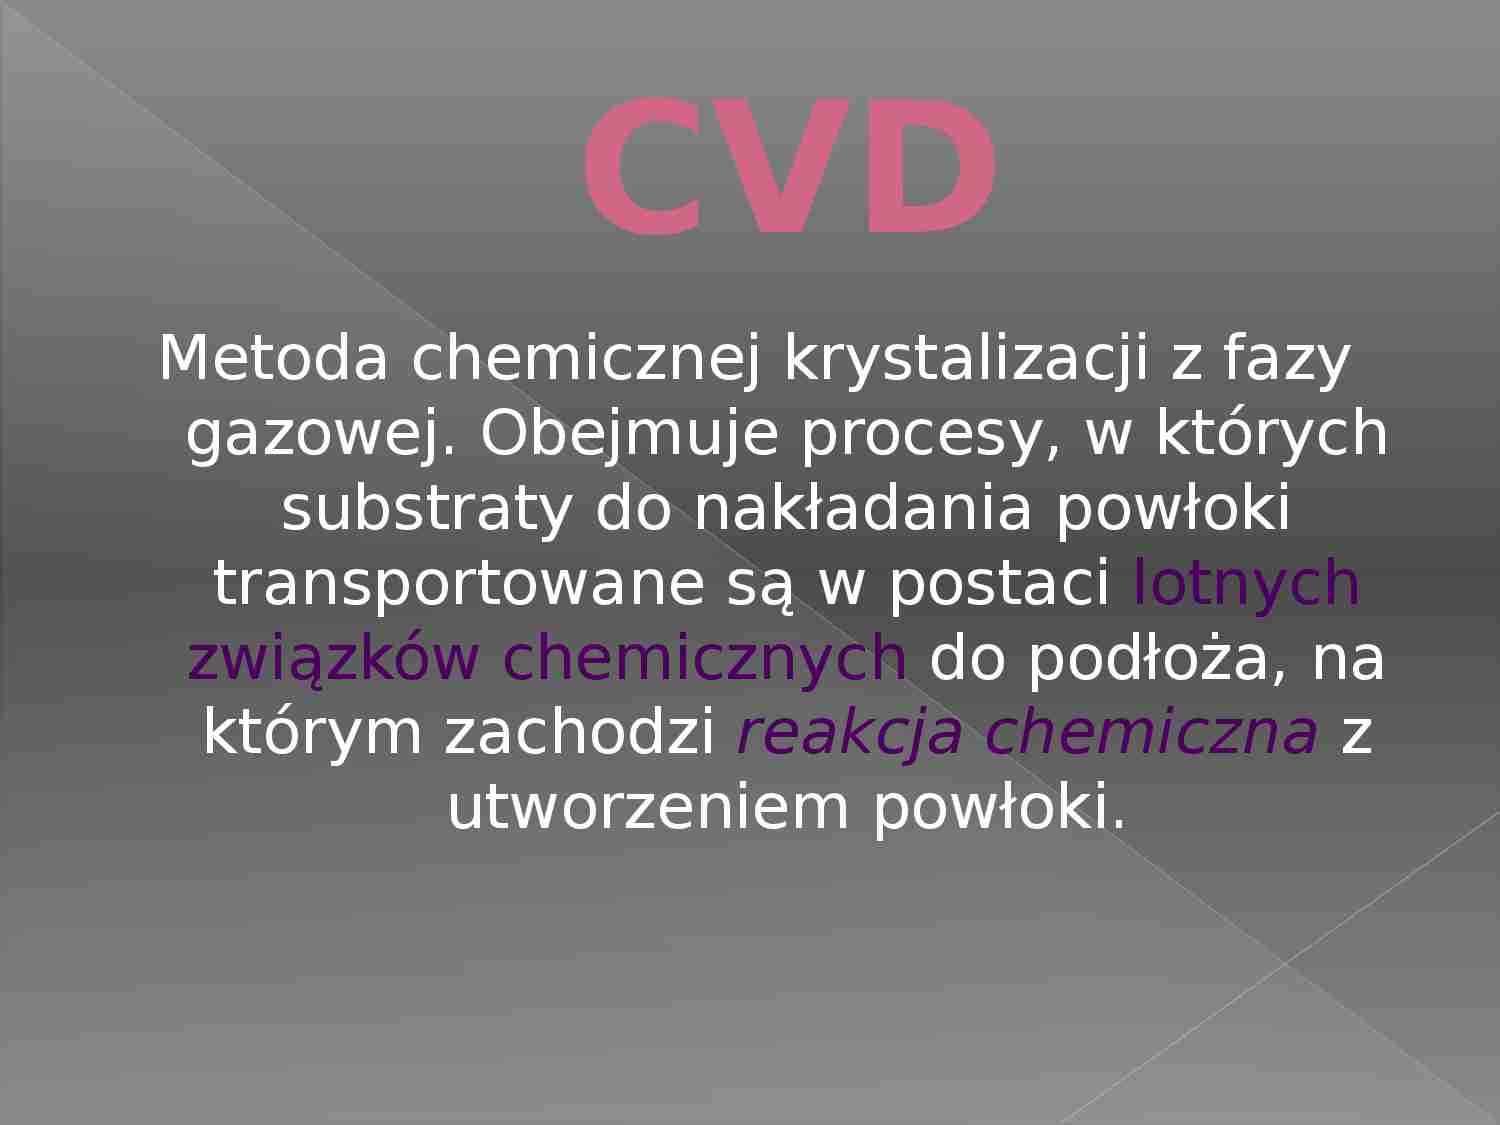 Metoda chemicznej krystalizacji - prezentacja - strona 1